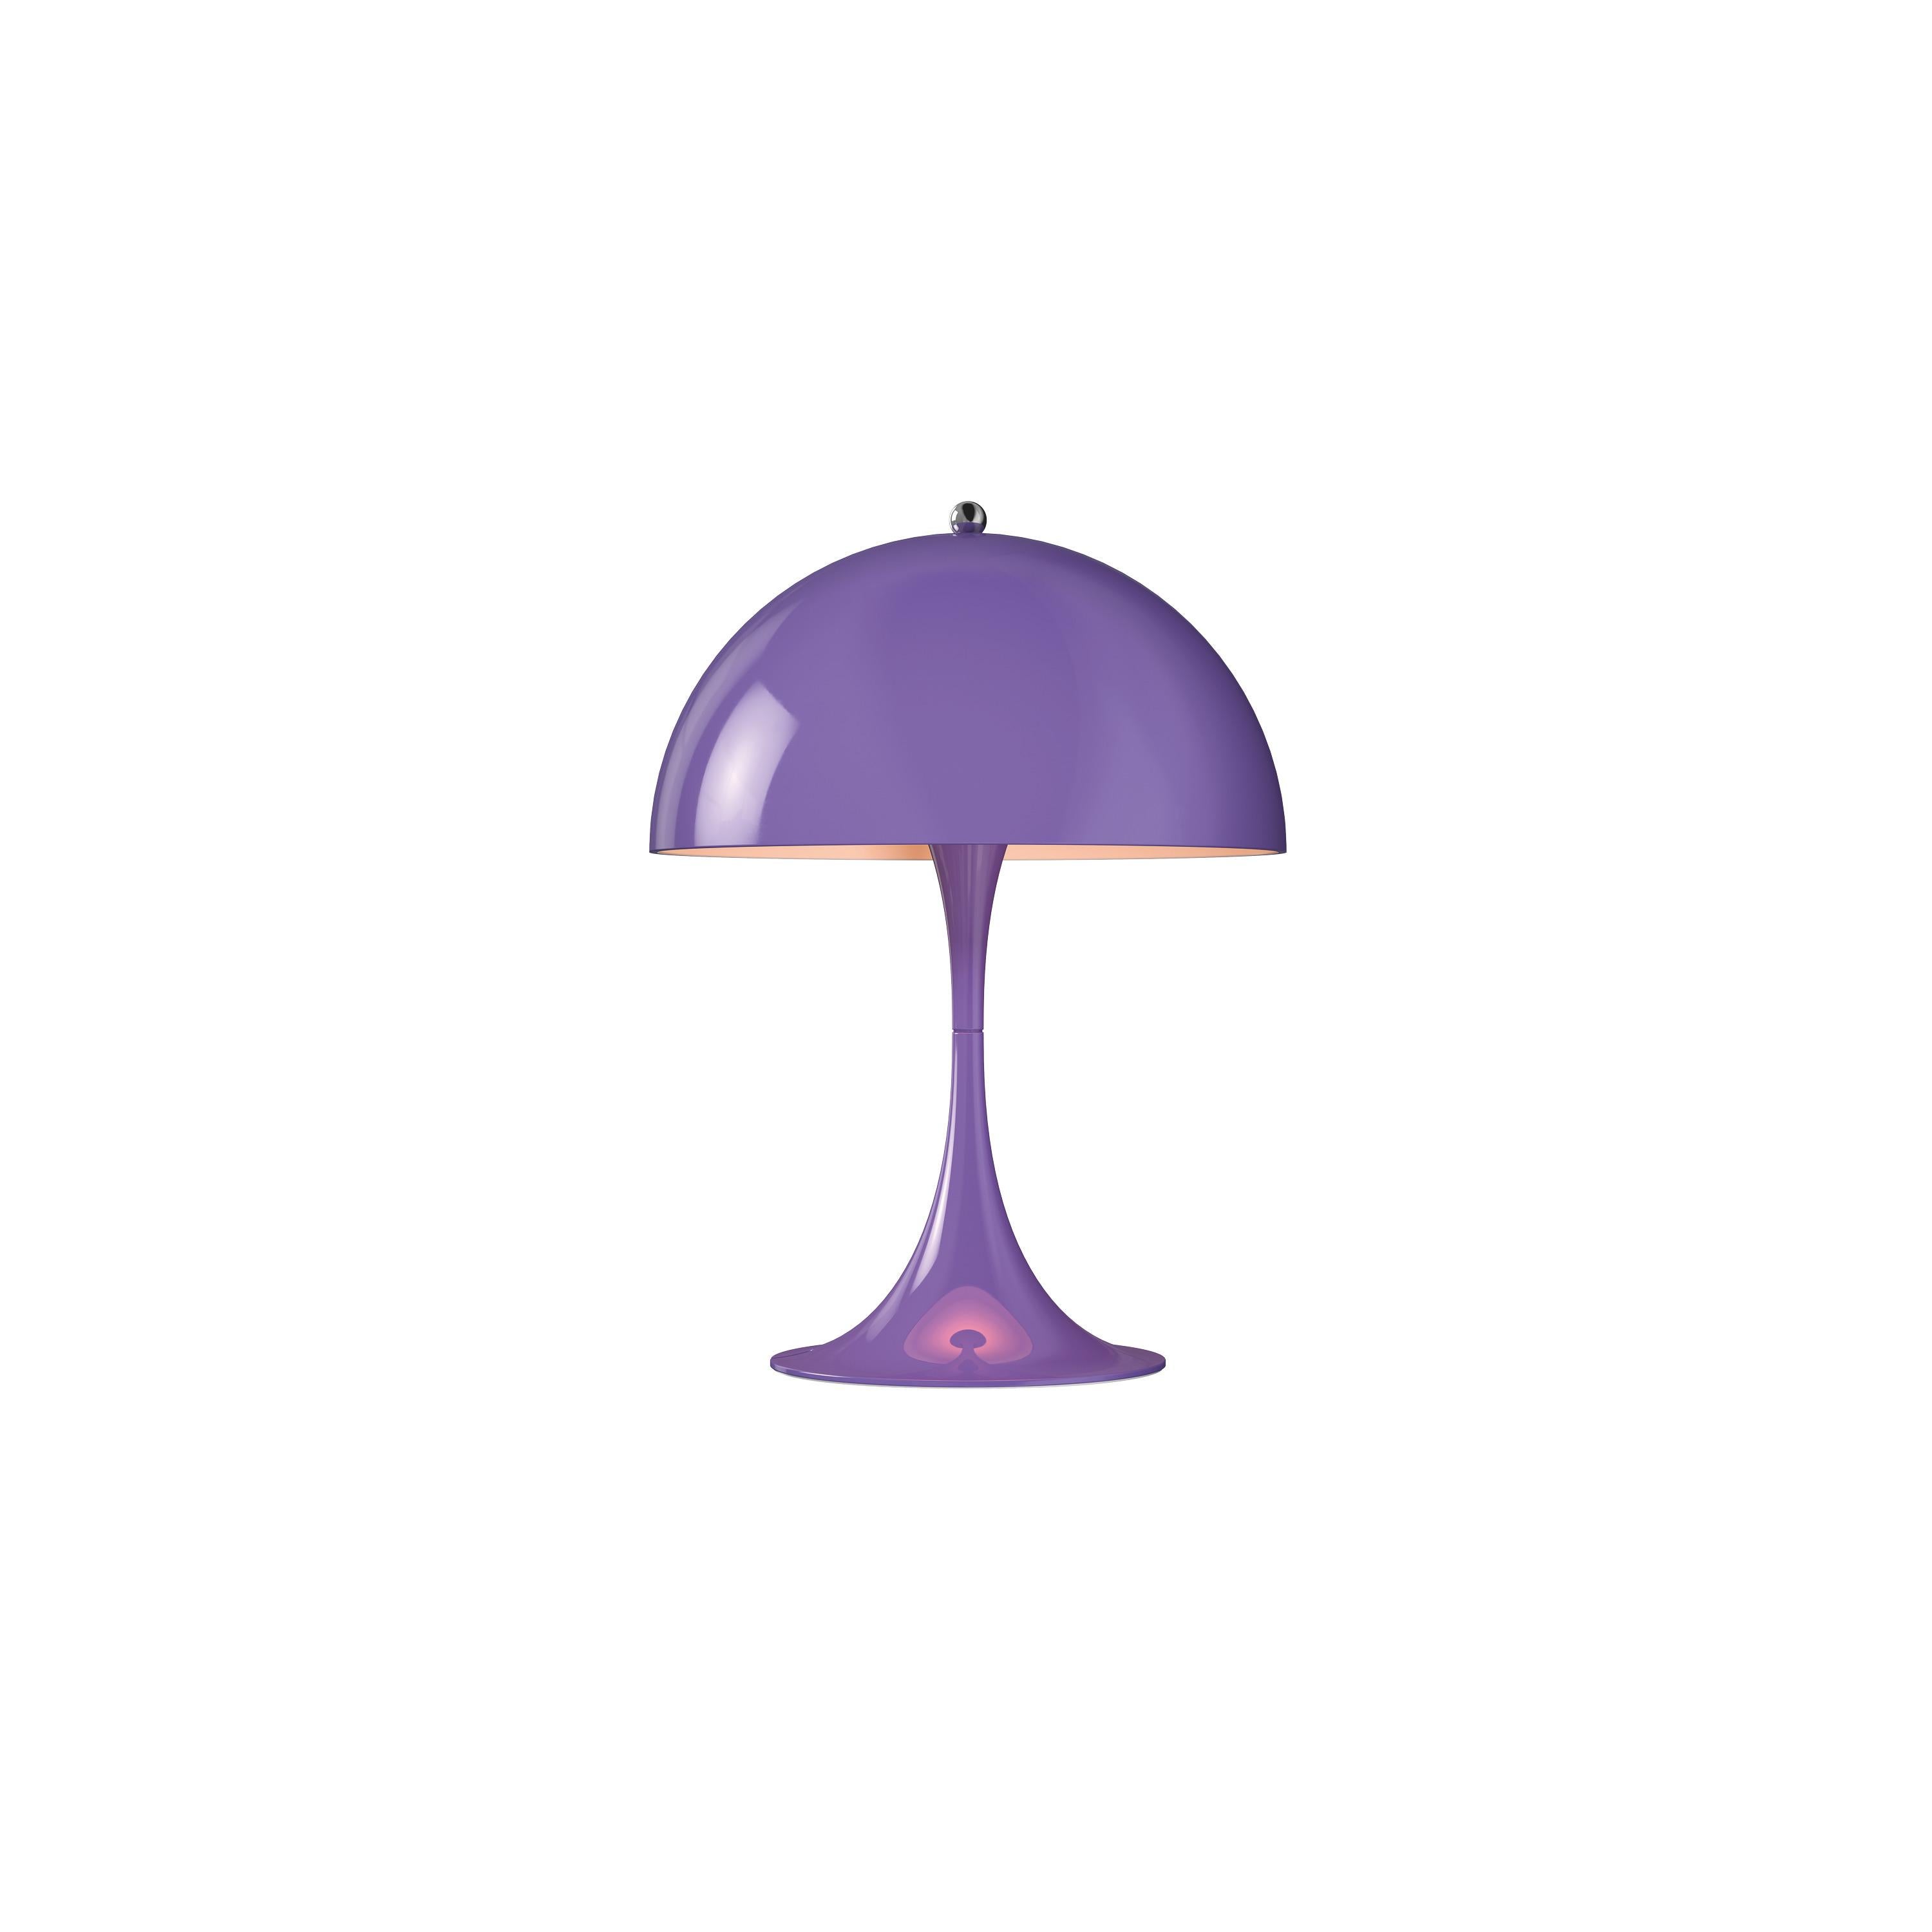 Im Angebot: Louis Poulsen Panthella 250, Tischlampe von Verner Panton, Violett (violet.jpg)